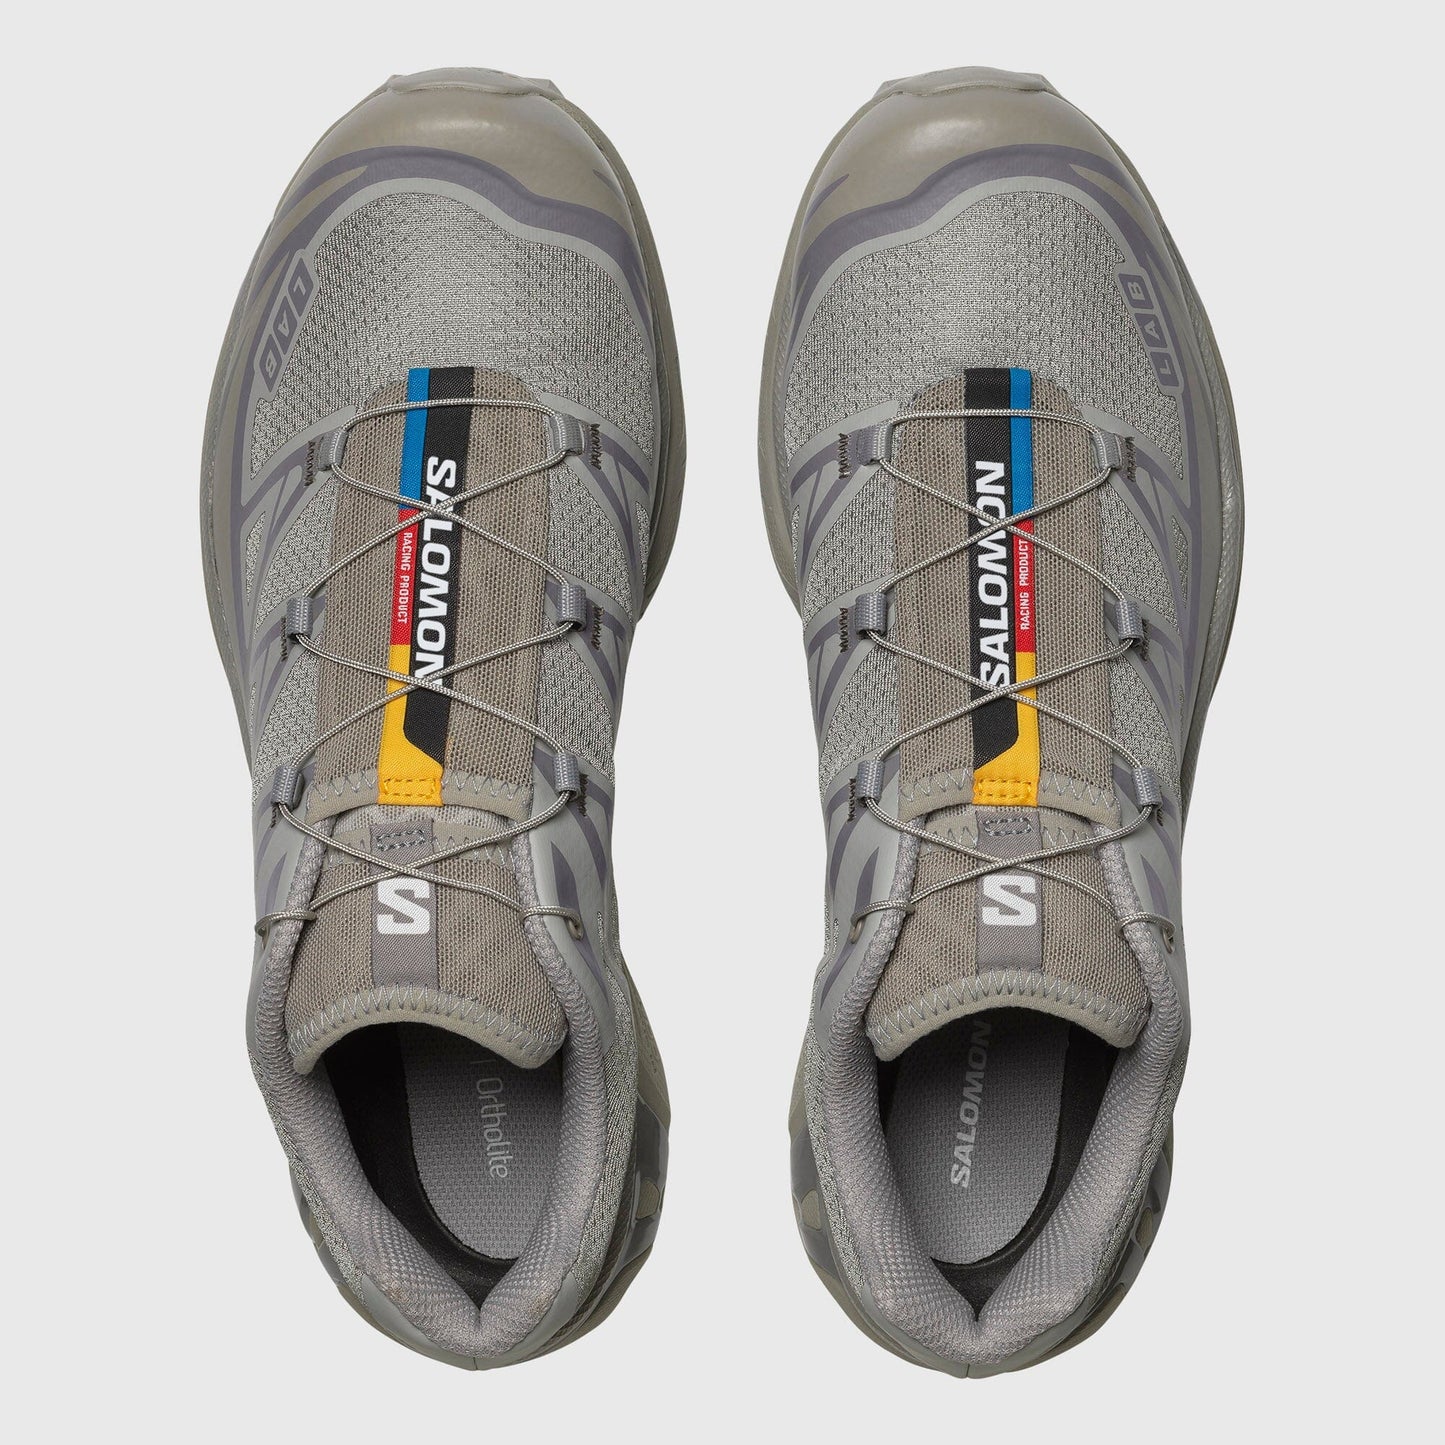 Salomon XT-6 Ghost Sneakers - Gray / Ghost Gray / Gray Flannel Sneakers Salomon 